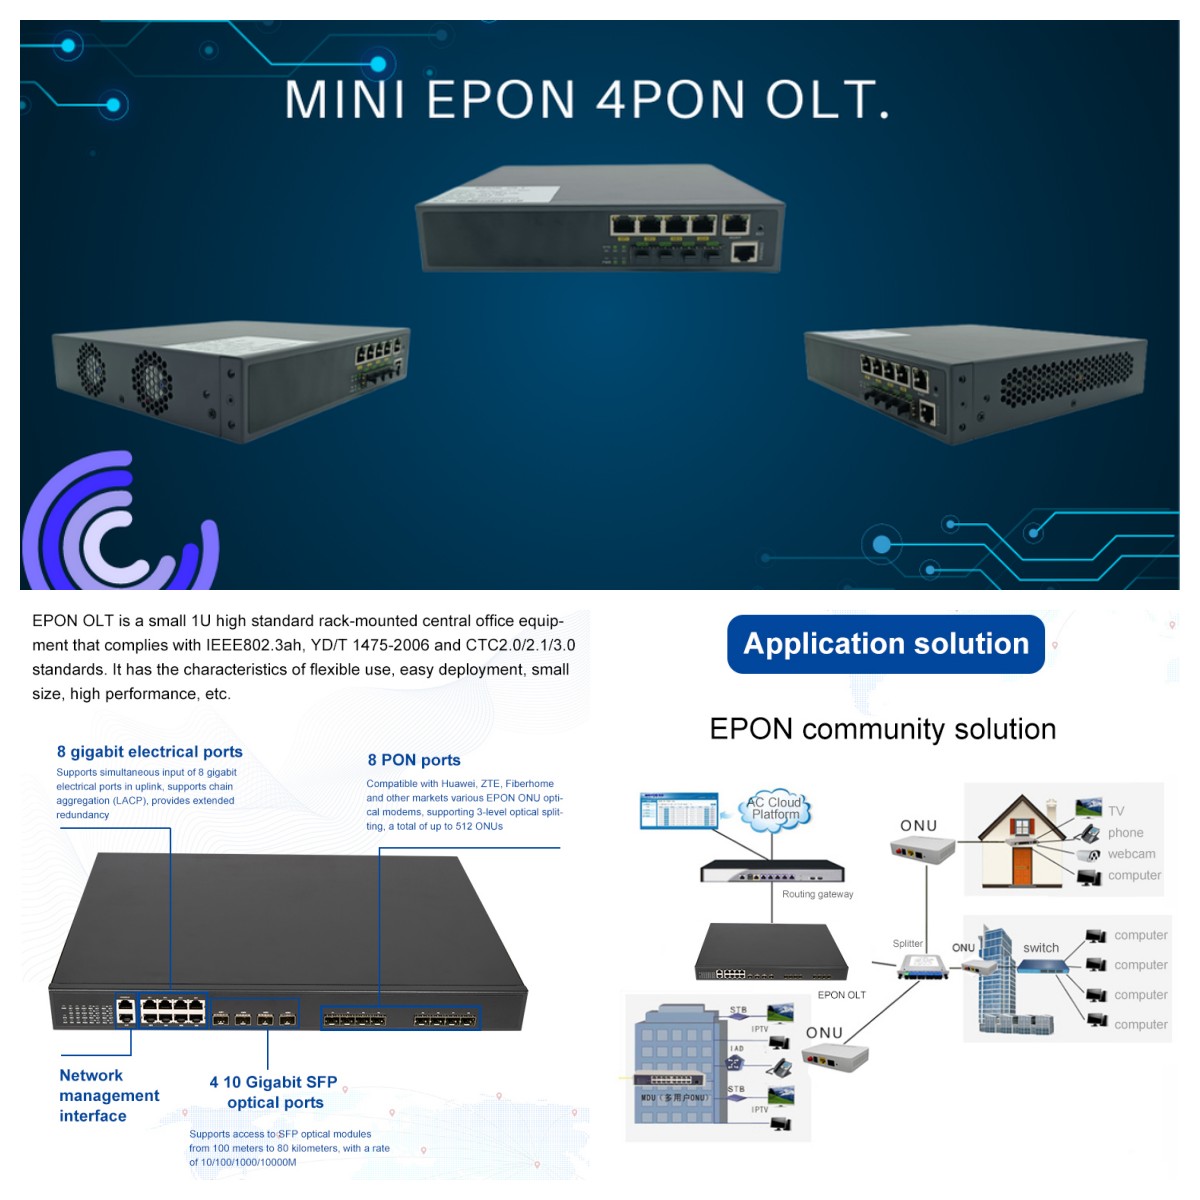 EPON 4PON OLT Application